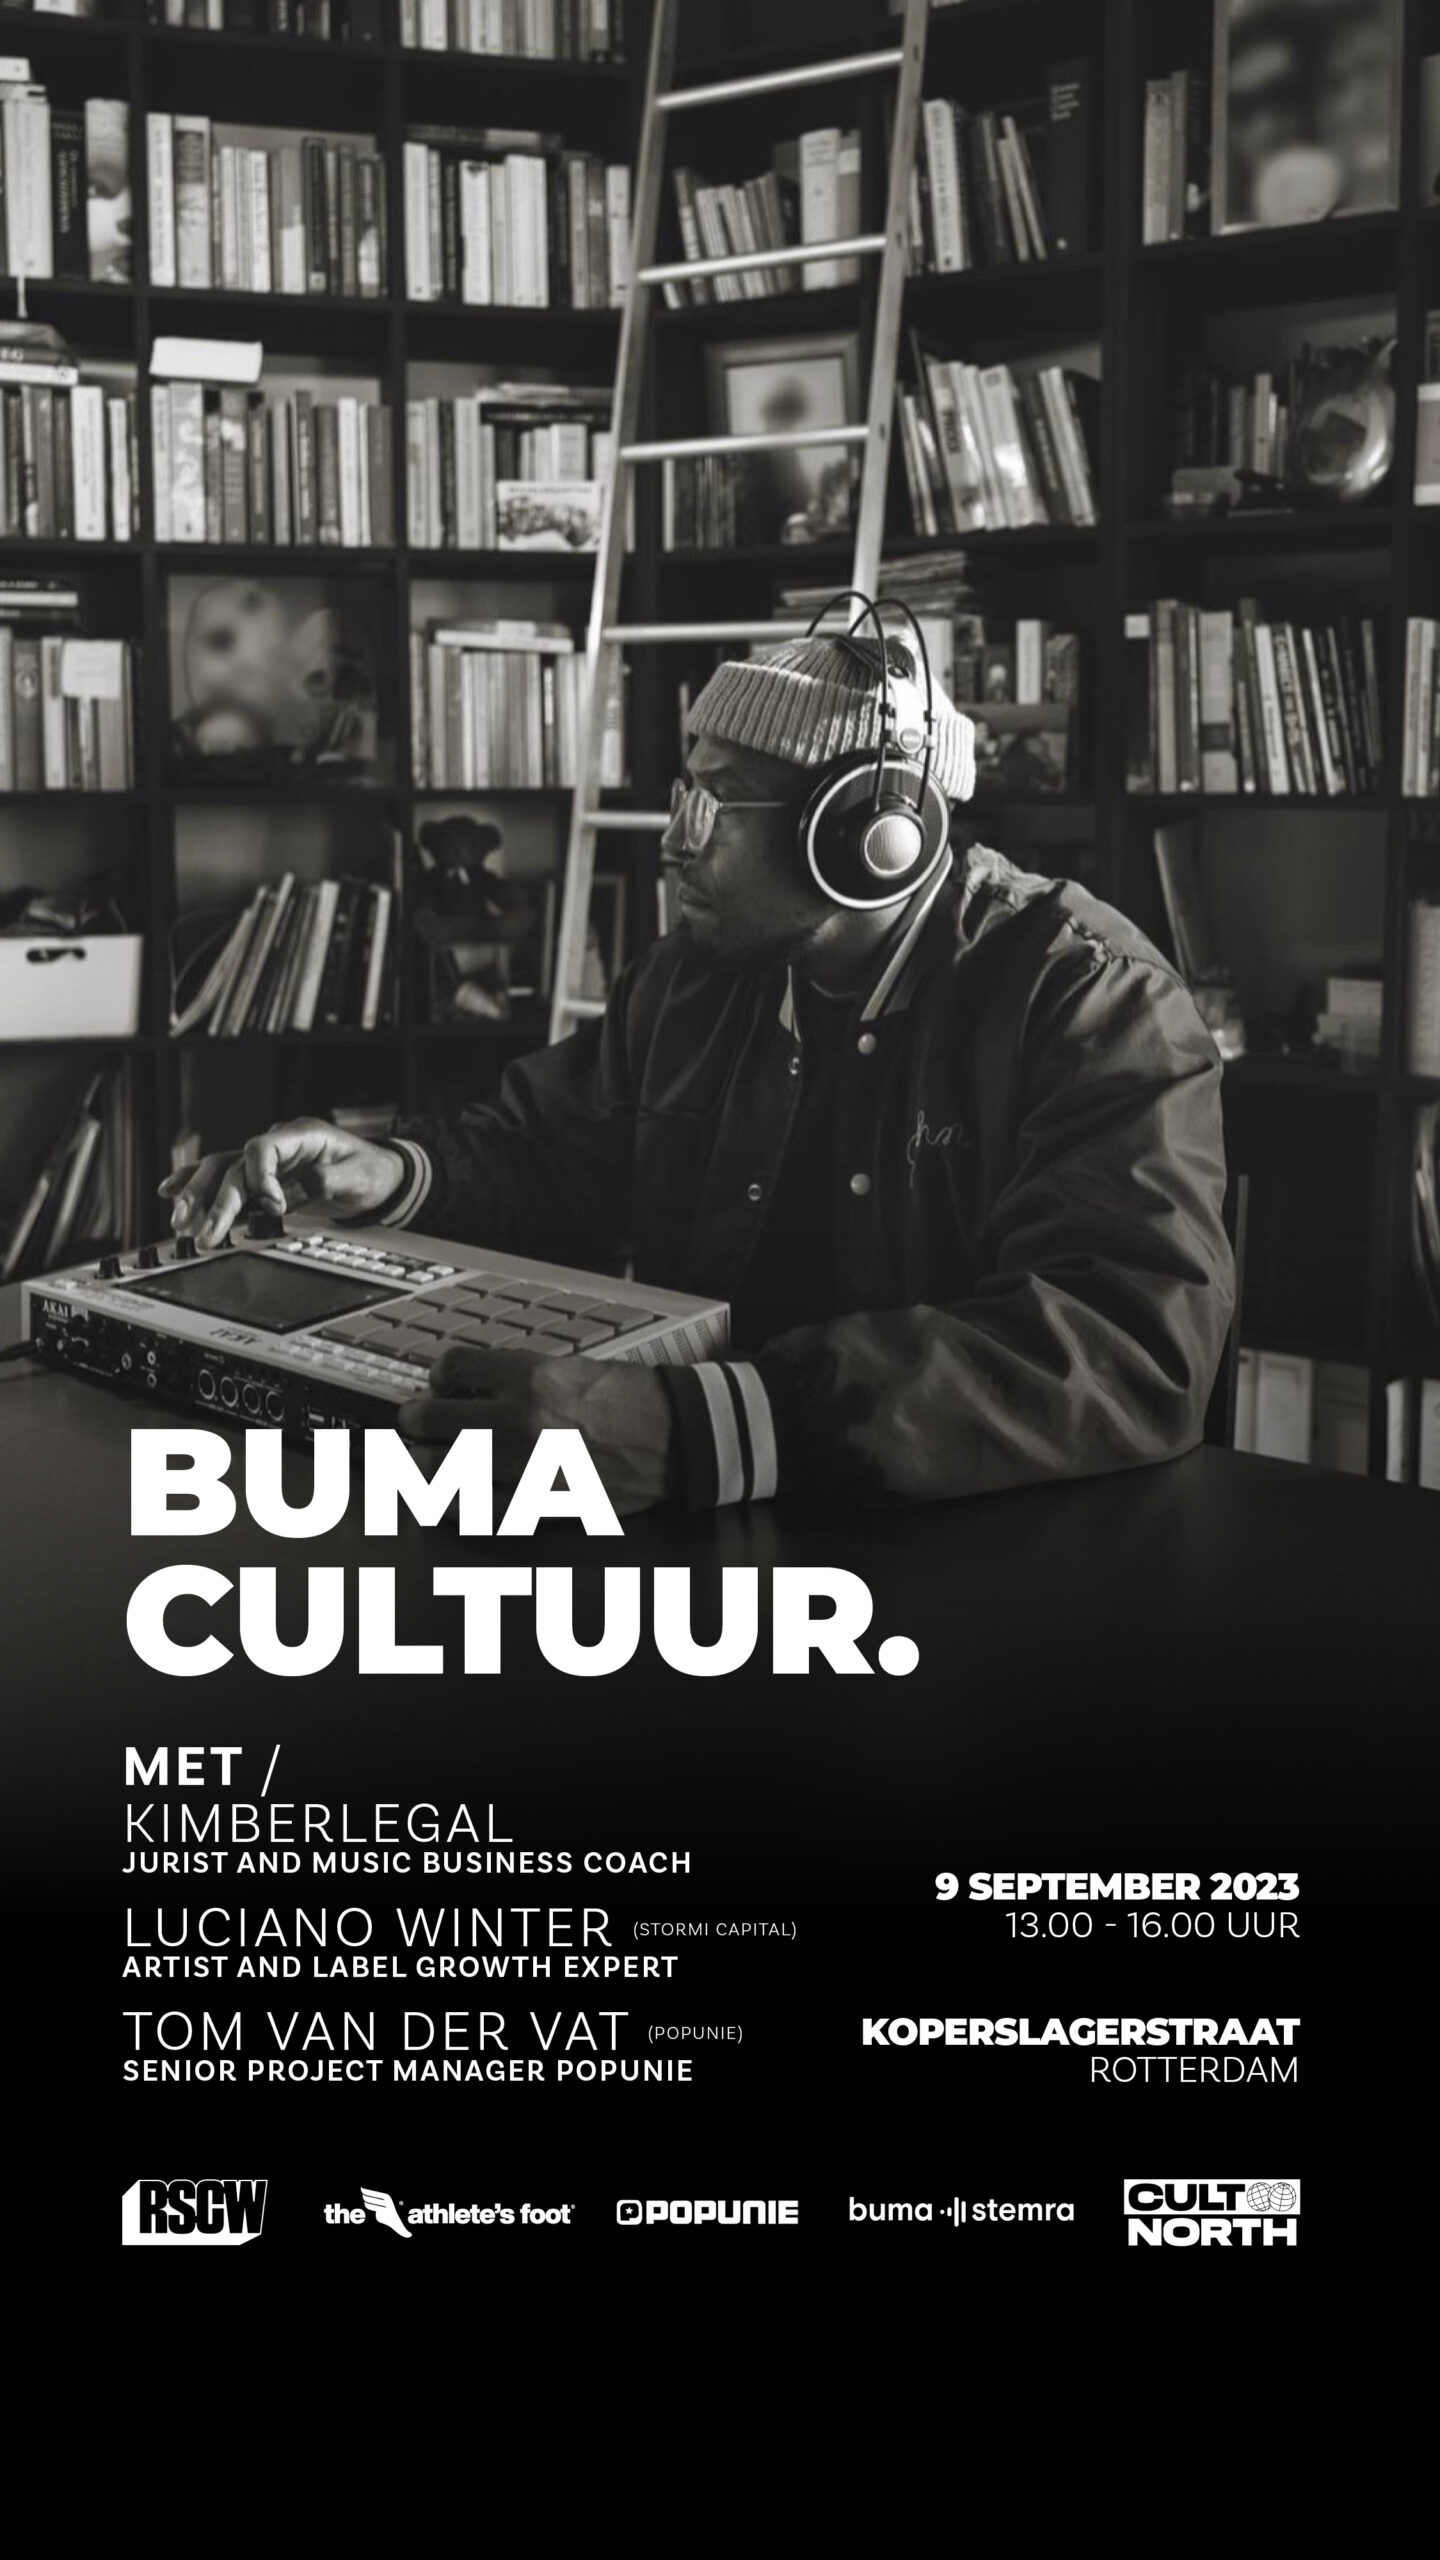 Buma cultuur talks 2023